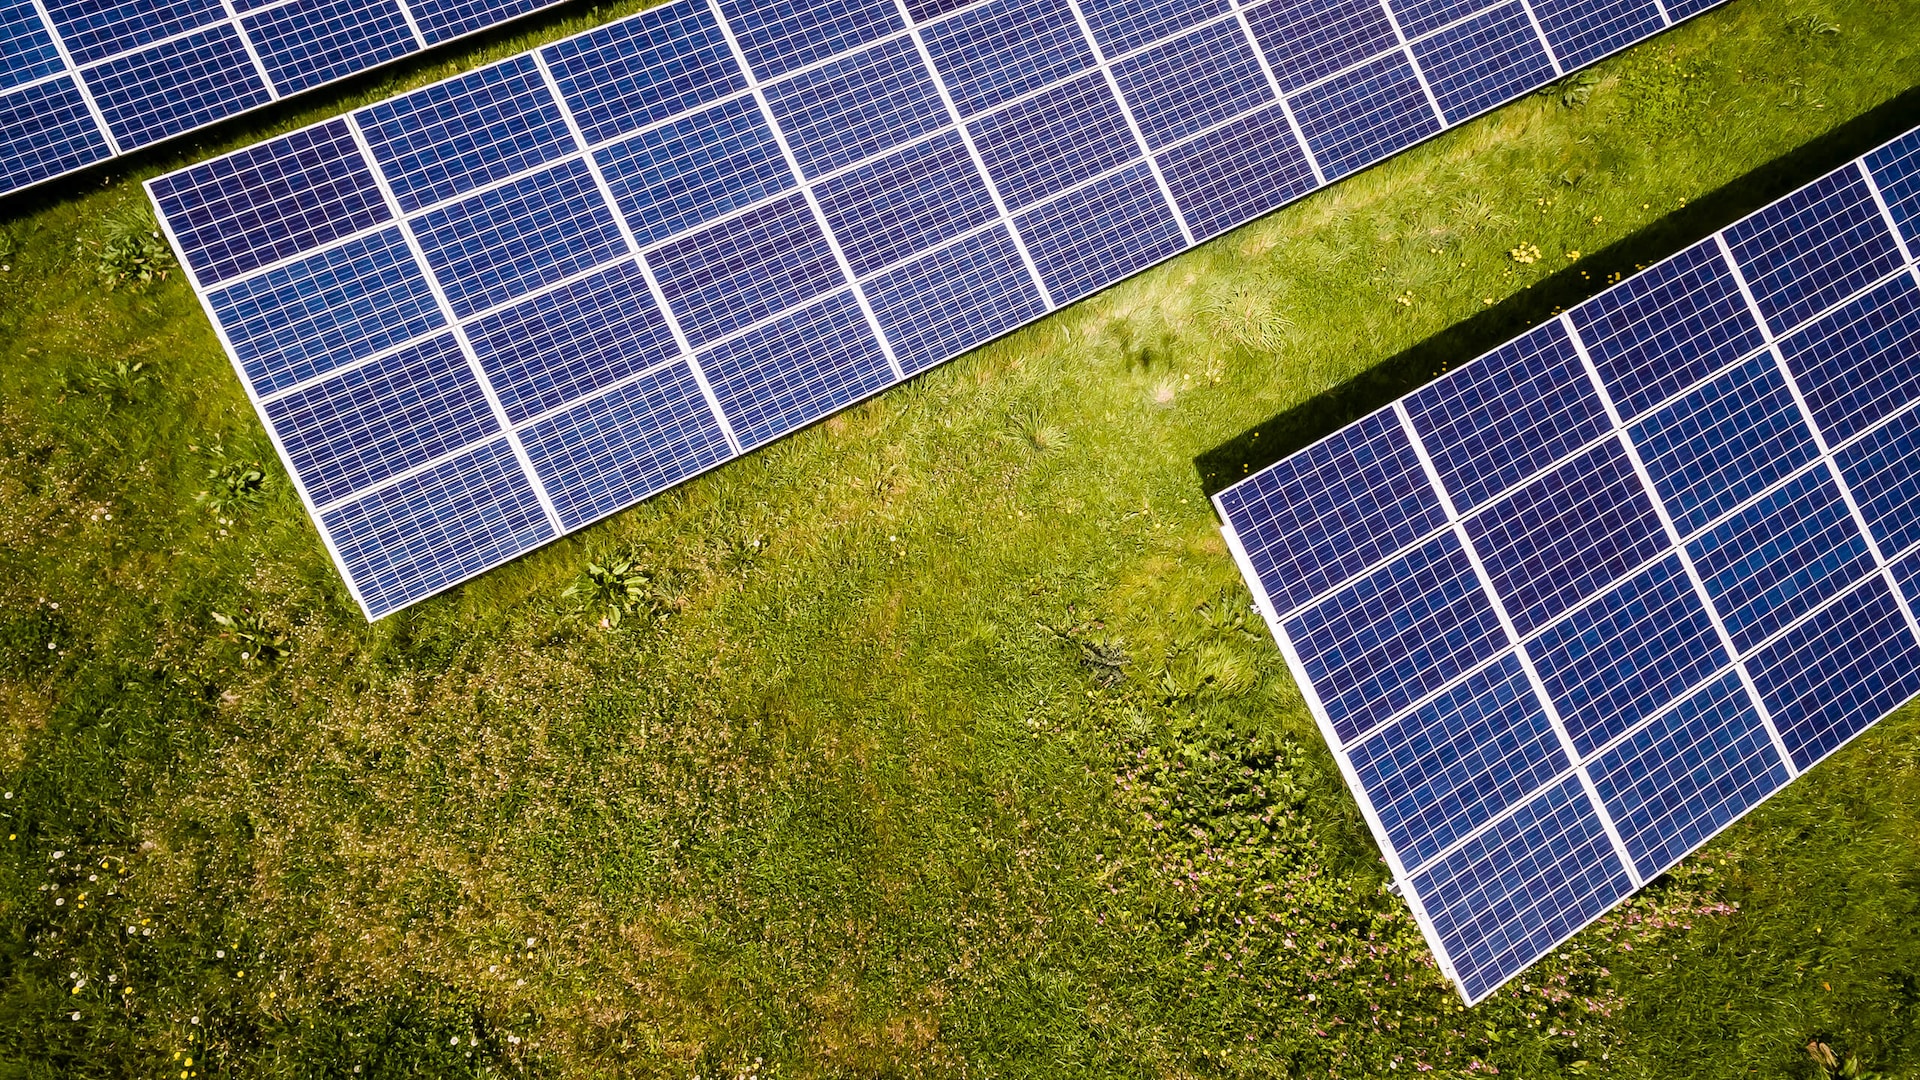 Fire gode grunde til at vælge et solcelleanlæg